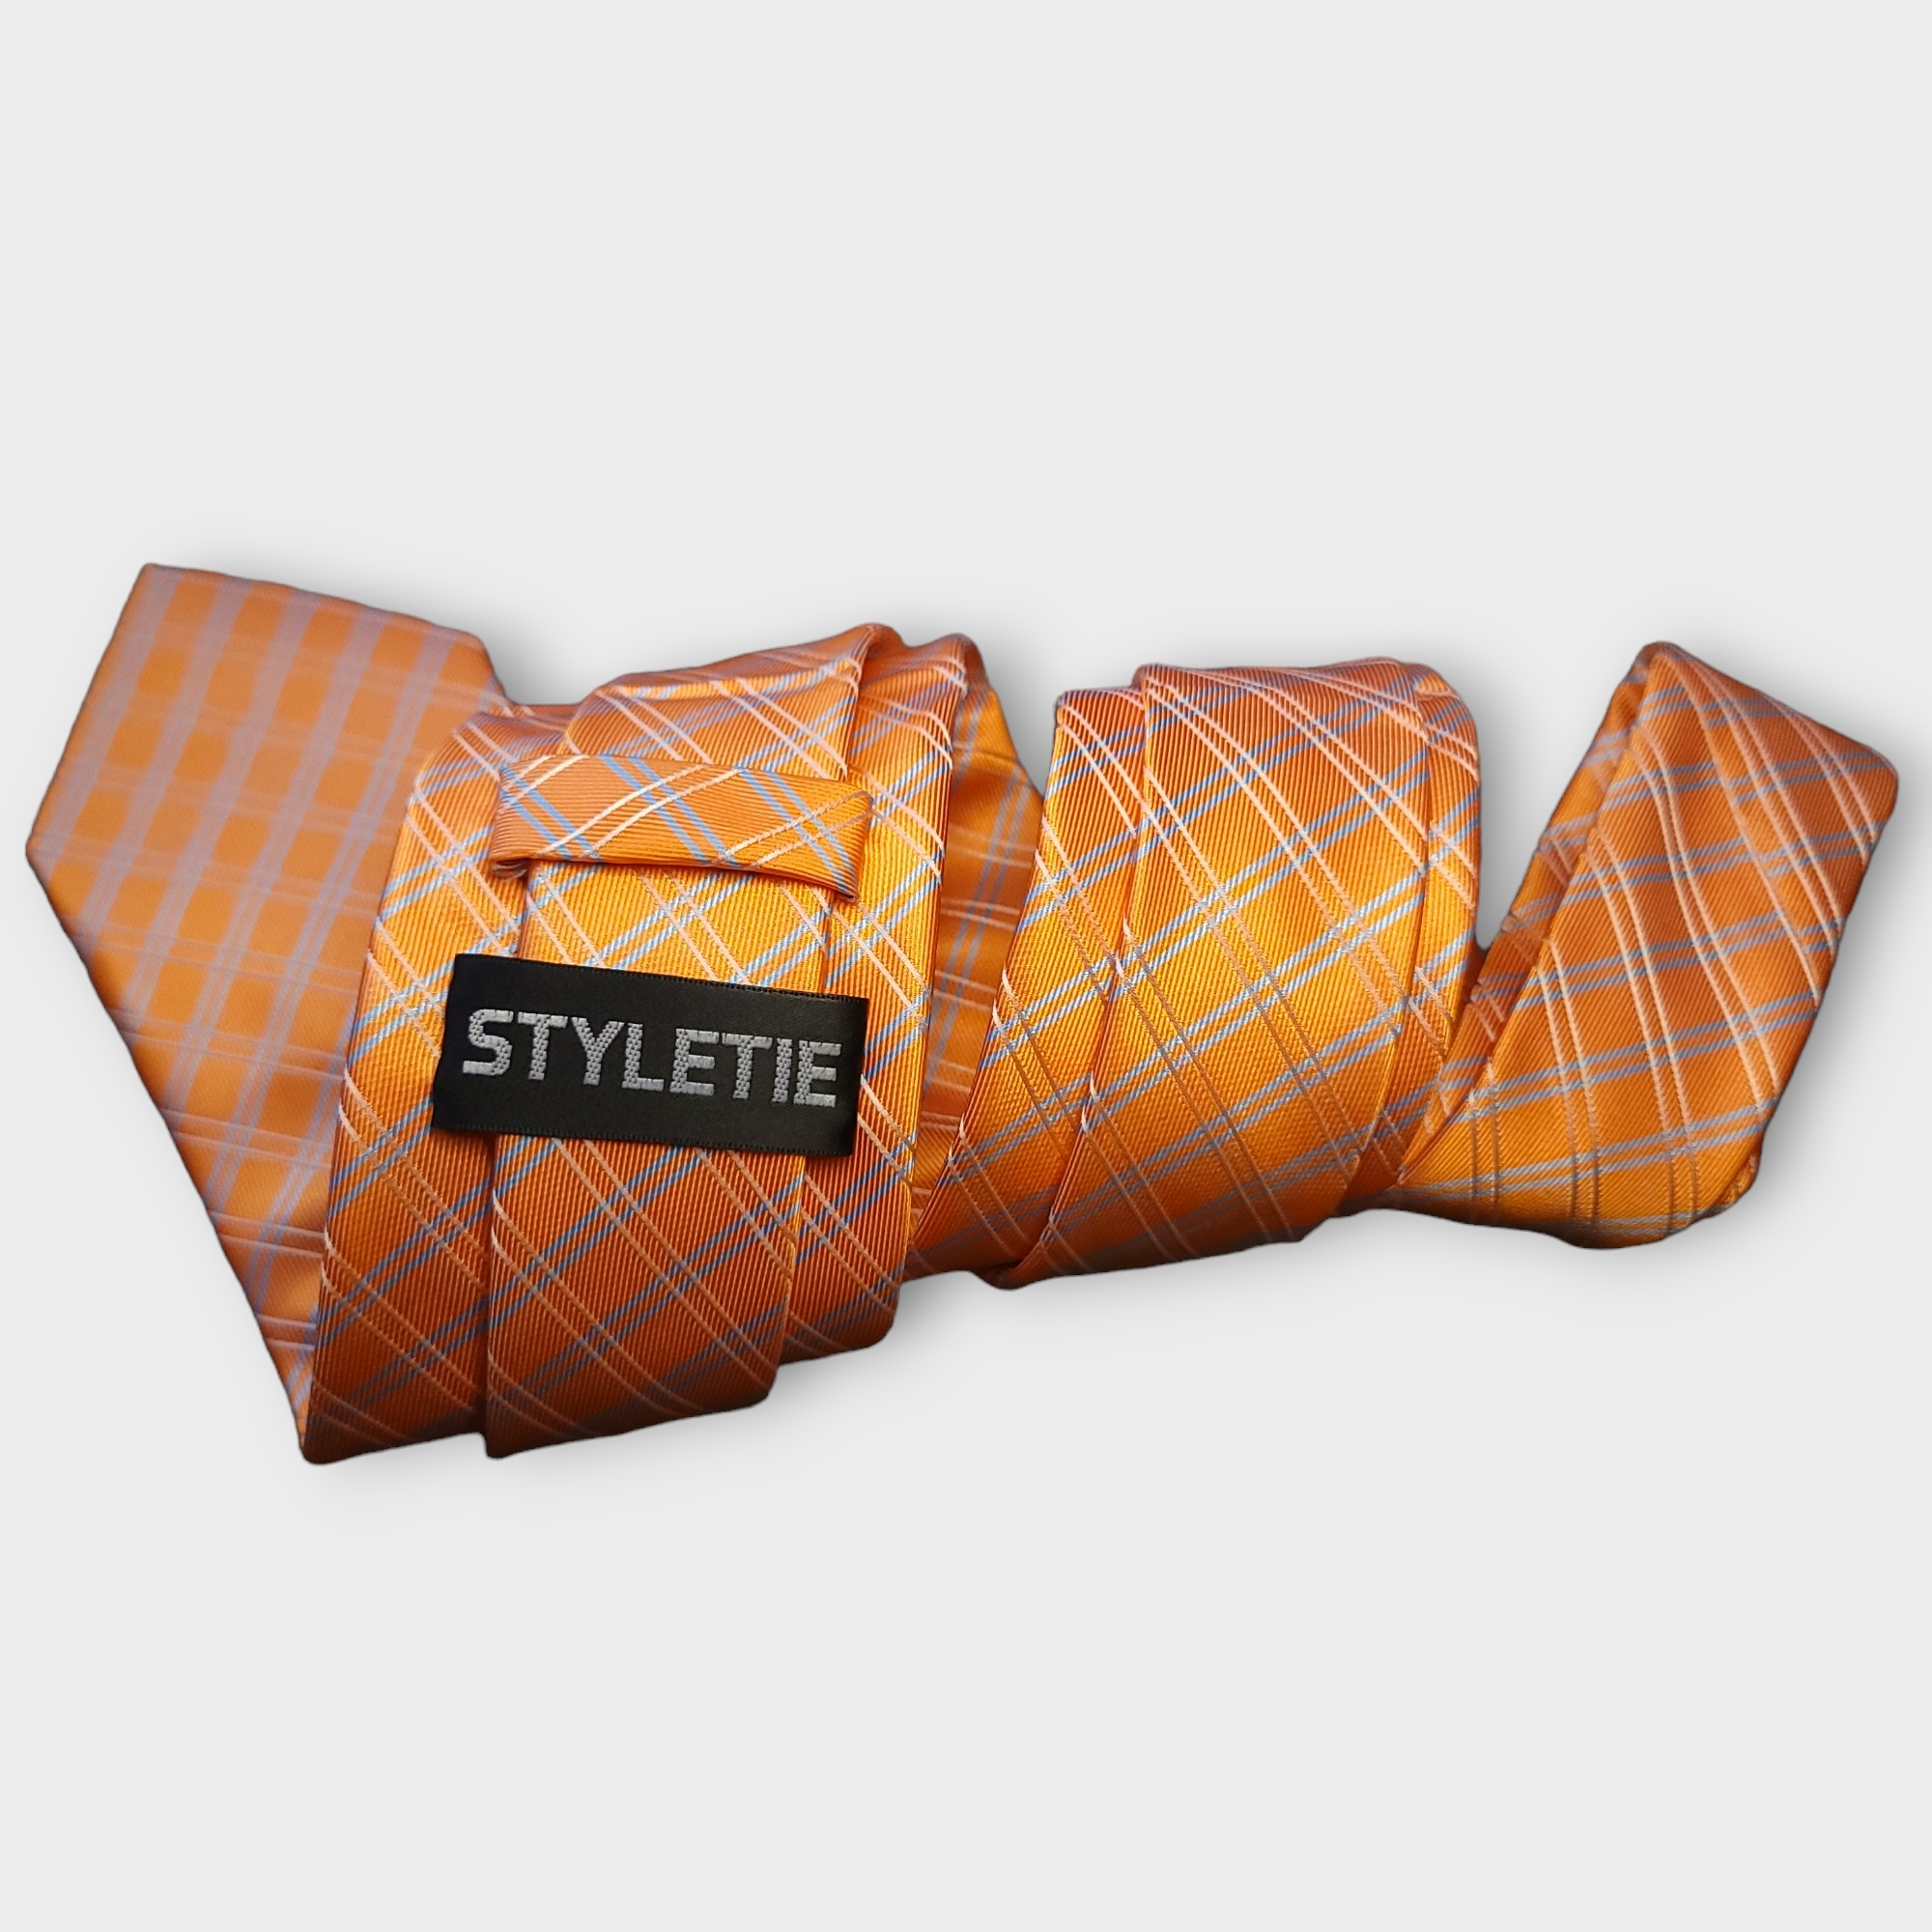 Orange Plaid Striped Silk Tie Pocket Square Cufflink Set